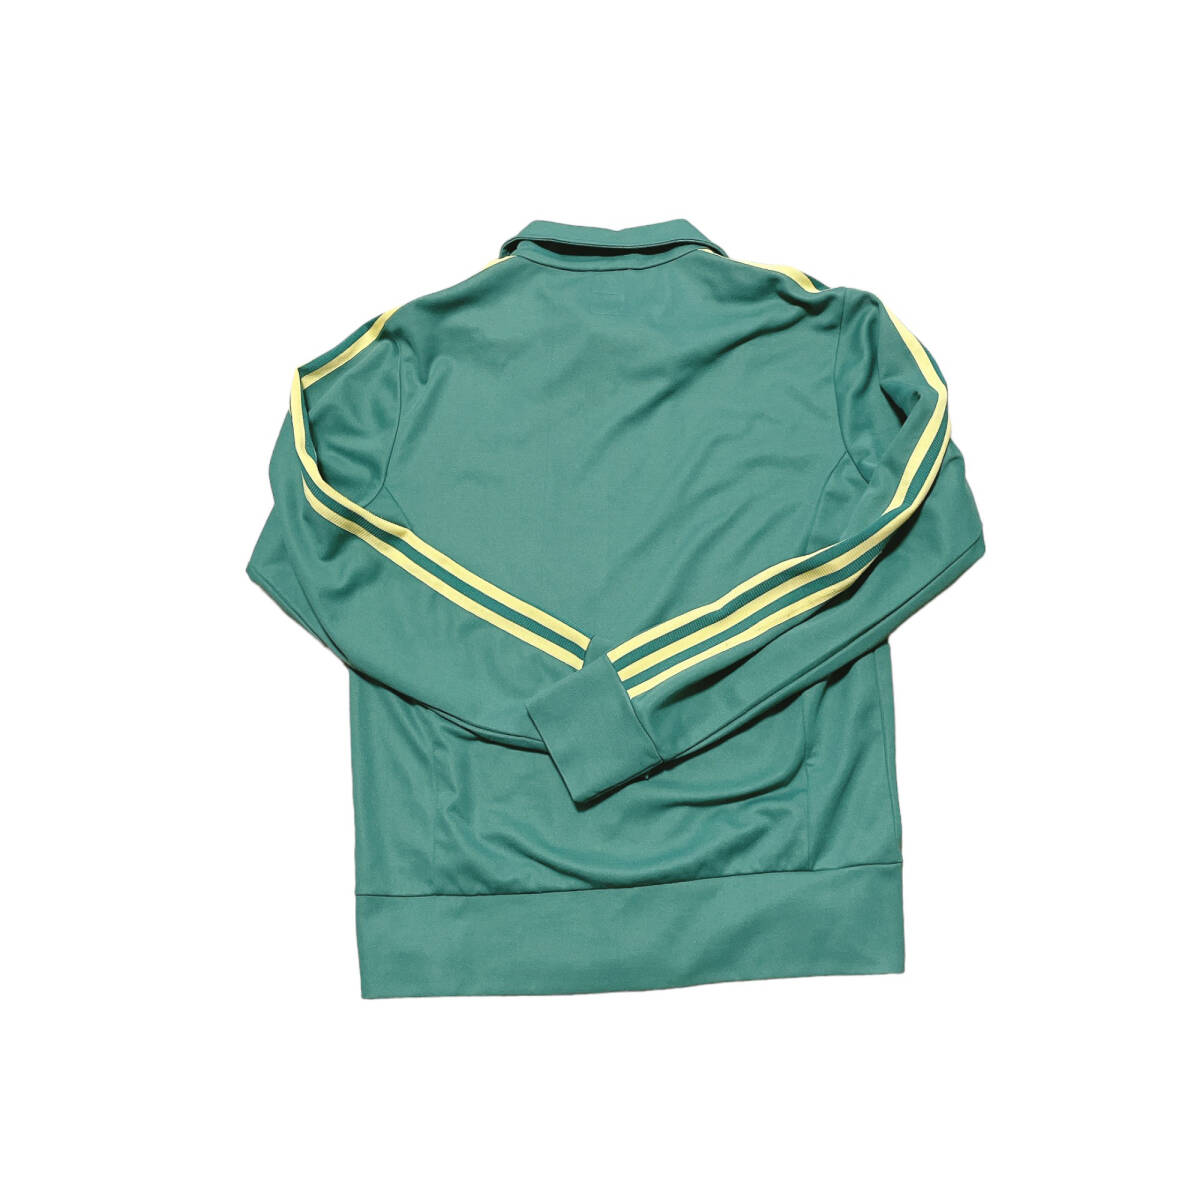 adidas Adidas спортивная куртка джерси национальный флаг бирка 2000 годы зеленый | желтый полоса L размер 